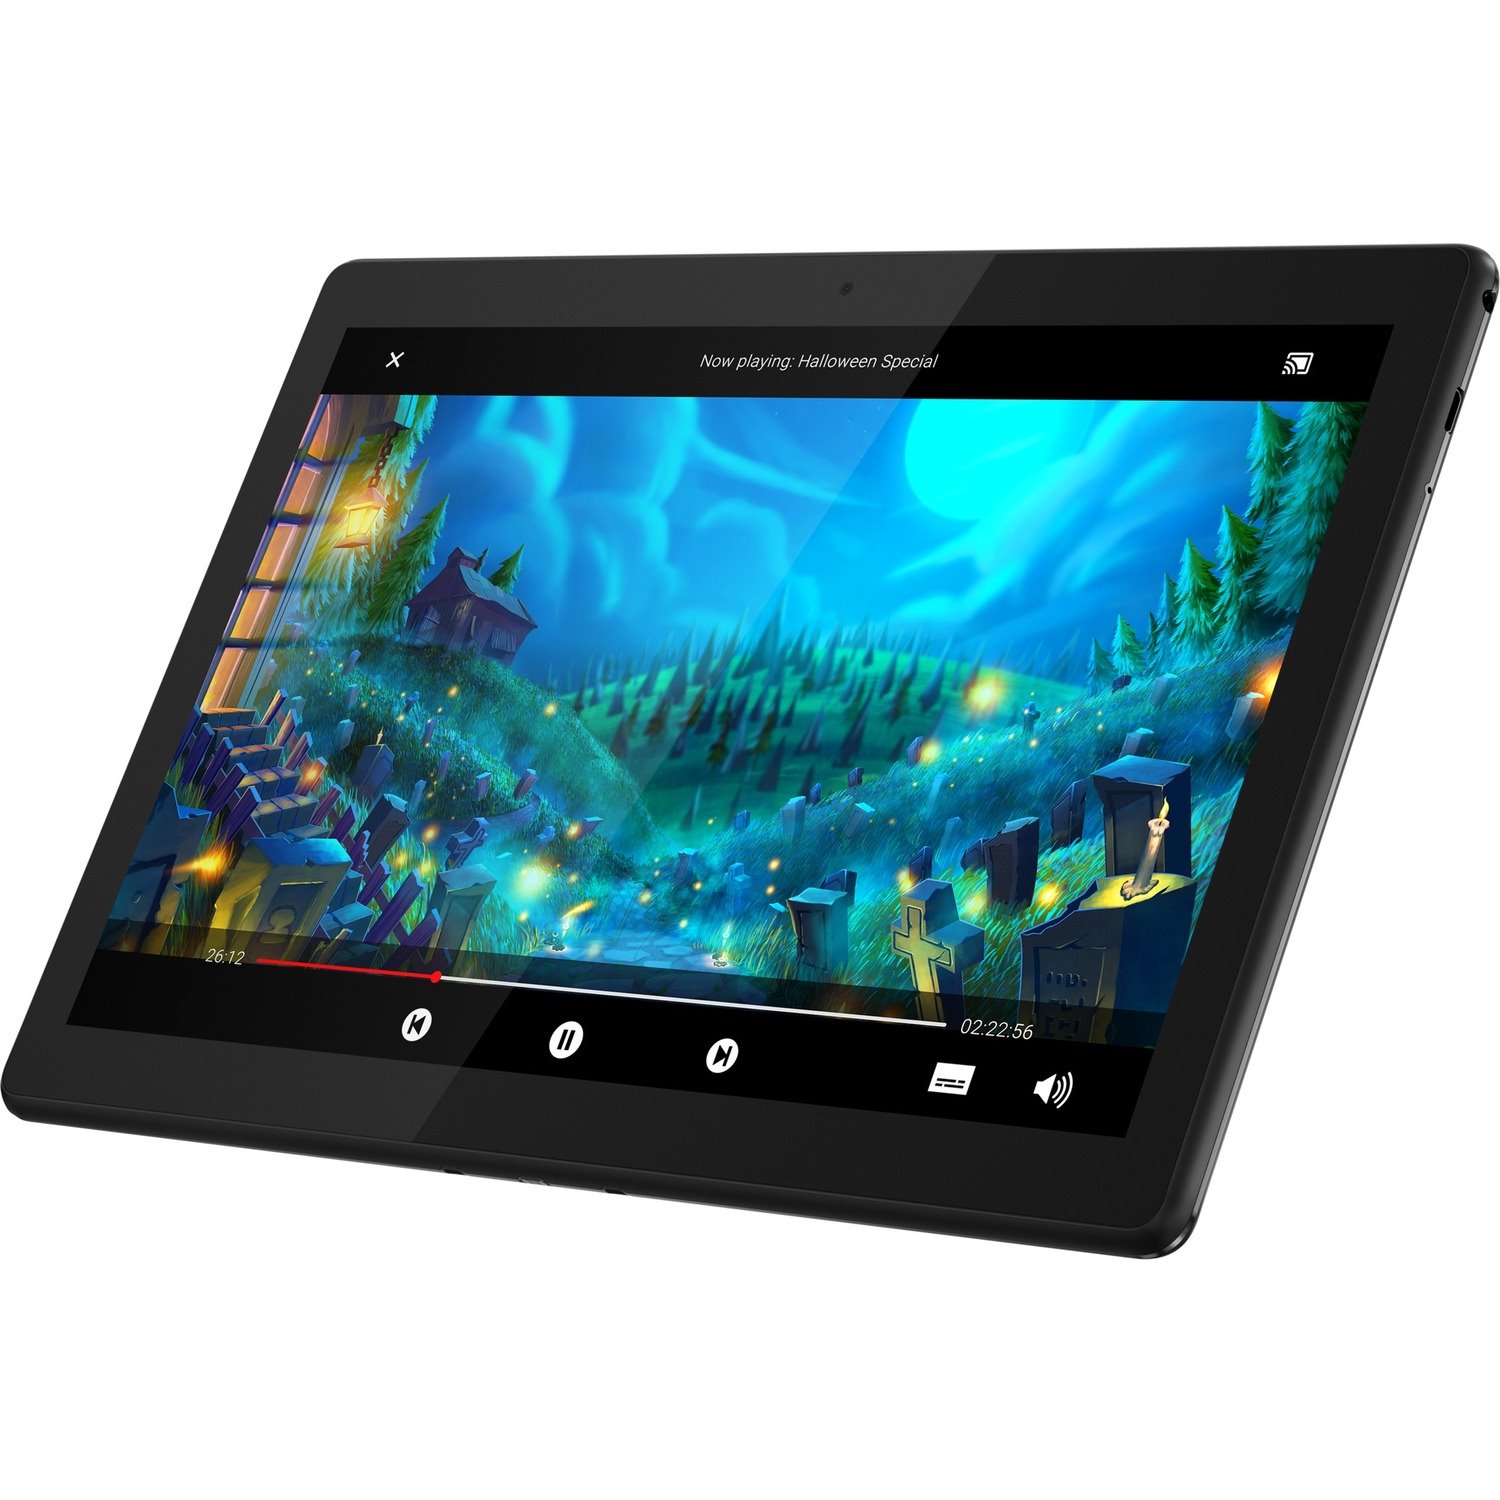 Lenovo Tab M10 TB-X505F Tablet - 10.1" - Qualcomm Snapdragon 429 - 2 GB - 16 GB Storage - Android 9.0 Pie - Slate Black